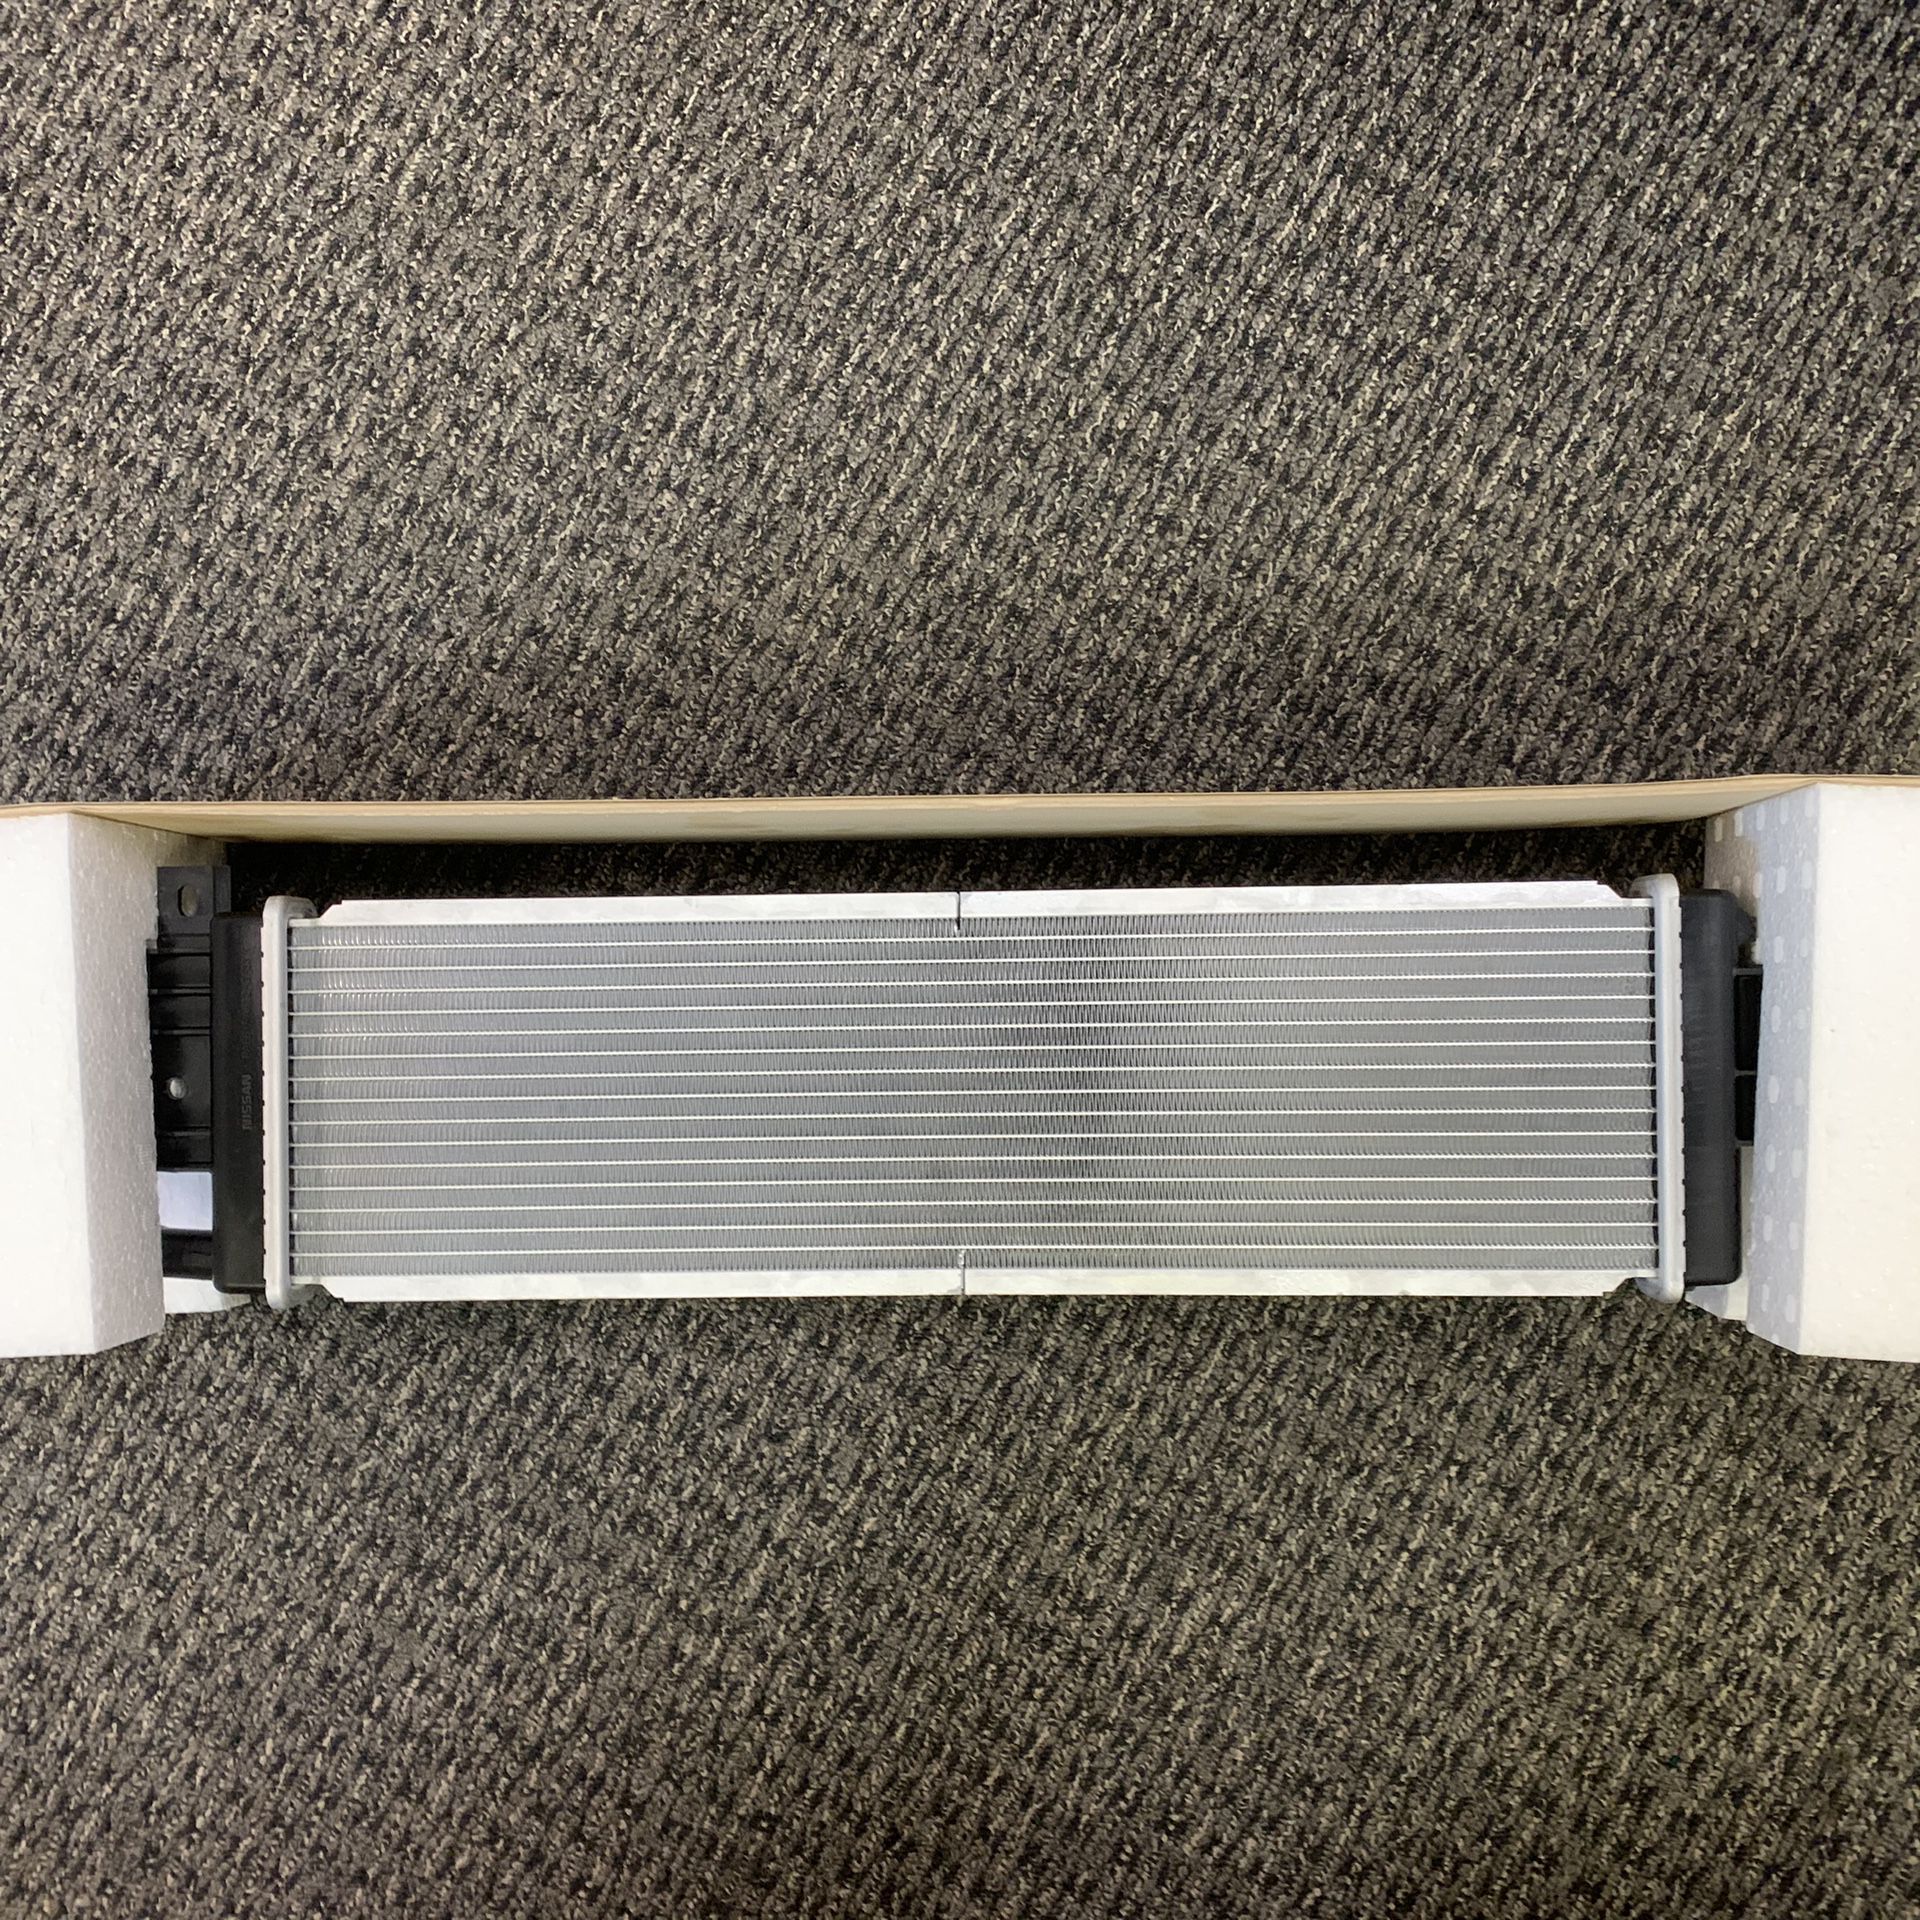 Infiniti Q50 auxilary radiator brand new!!